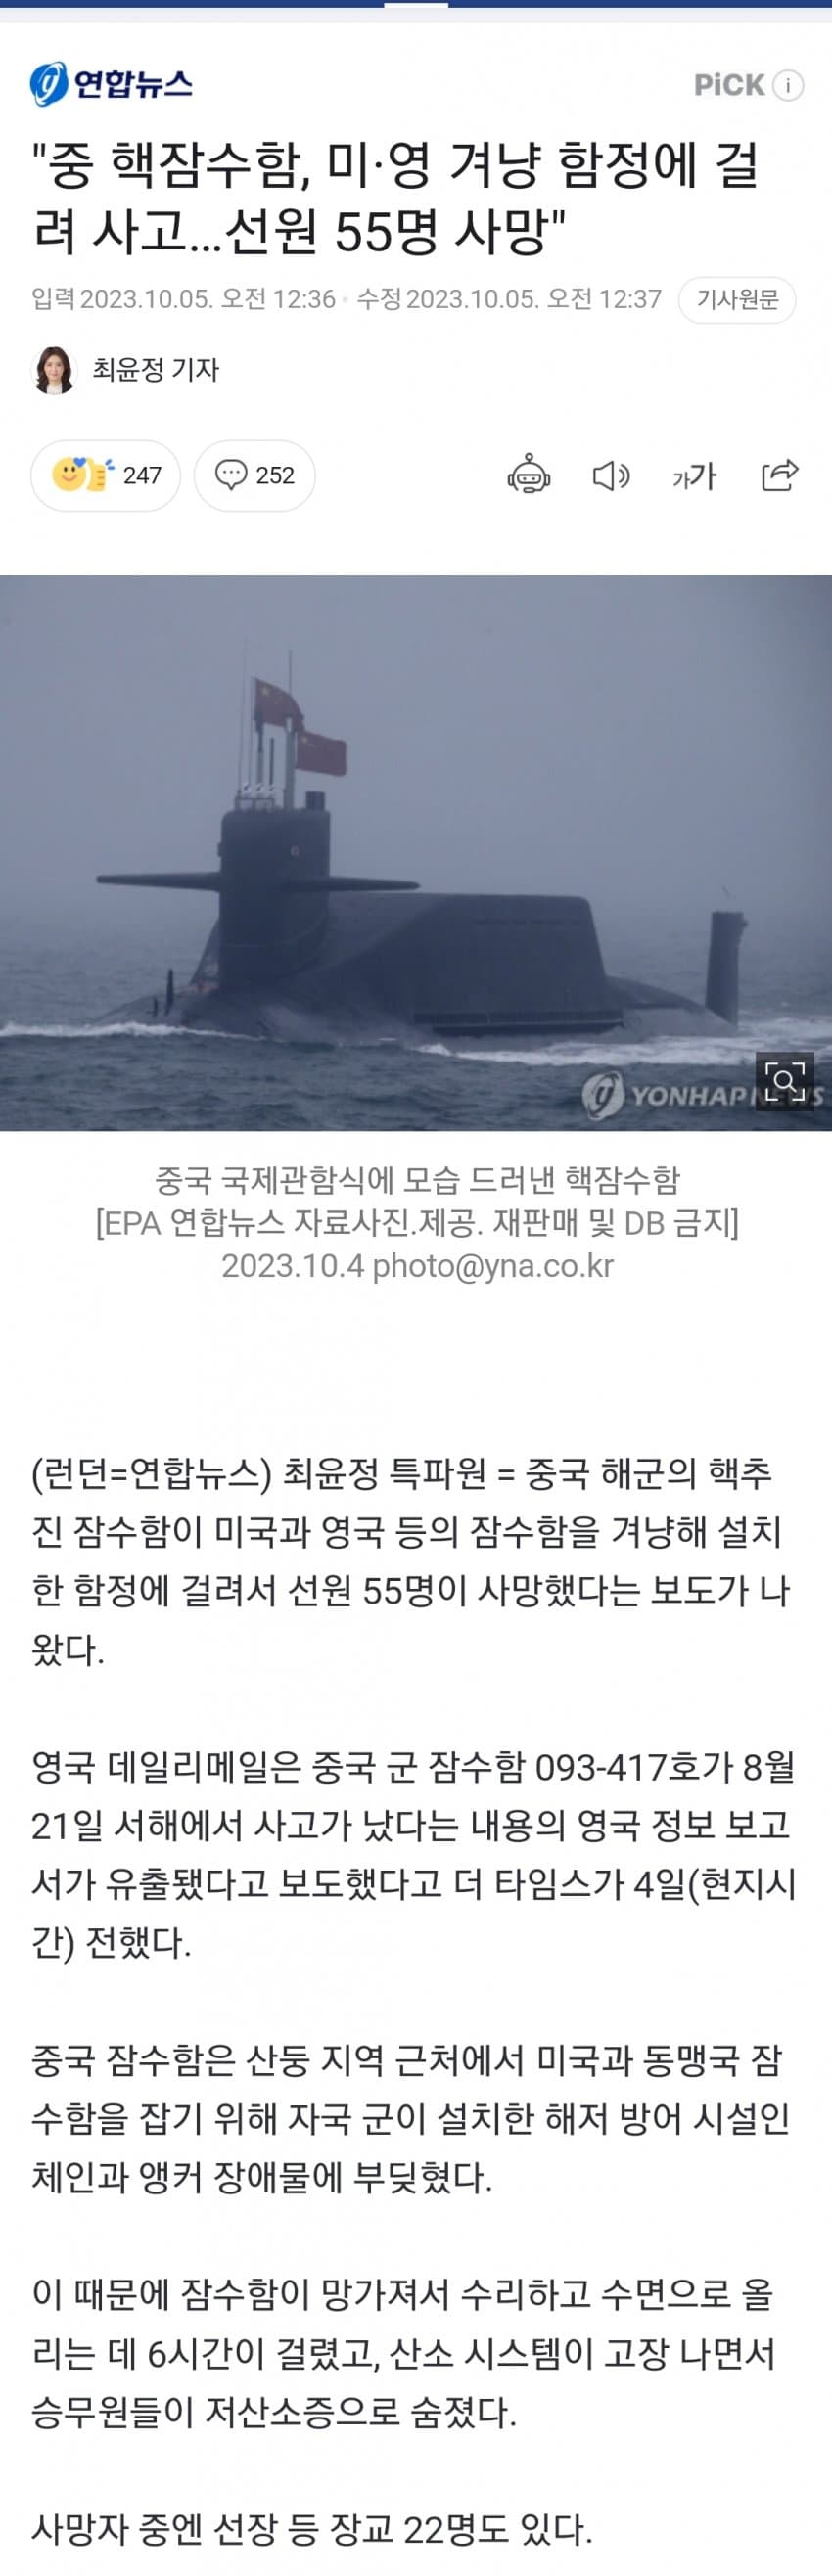 5ee85bf09db504d7689a7043d461fb83.jpg 중국 핵잠수함 사고의 진실?